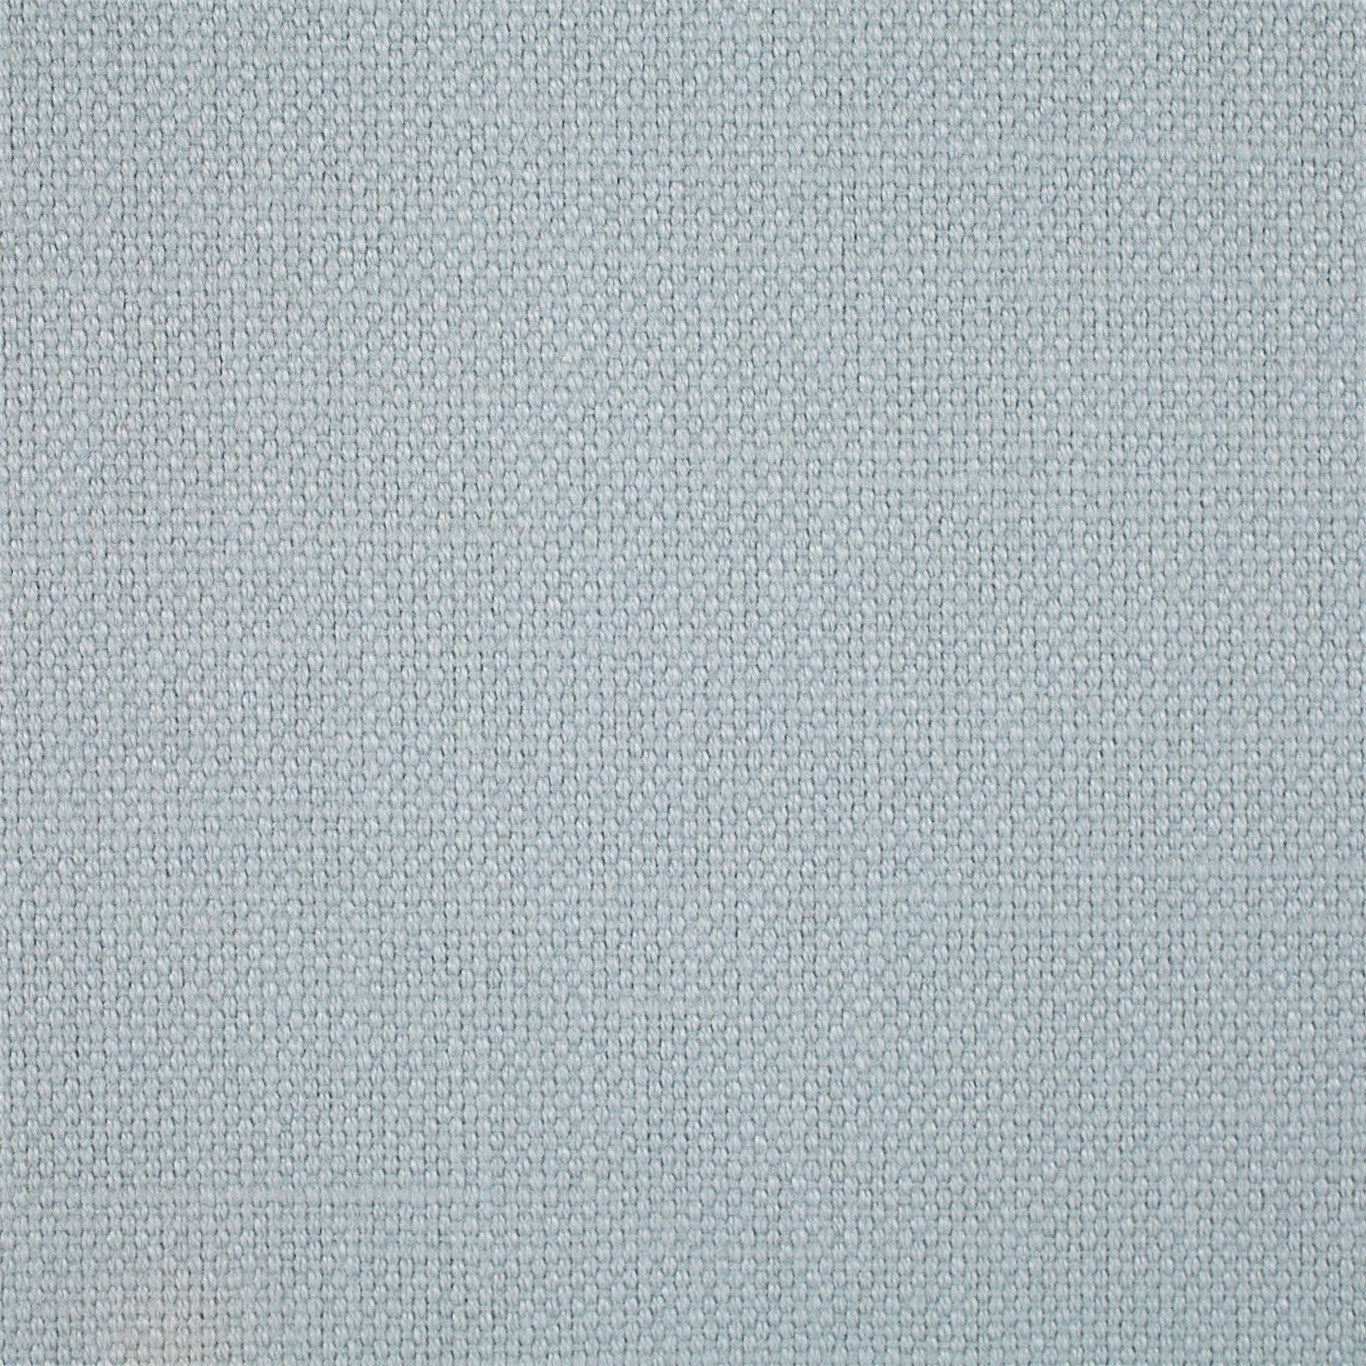 Arley Fabric by Sanderson - DALY245795 - Aqua